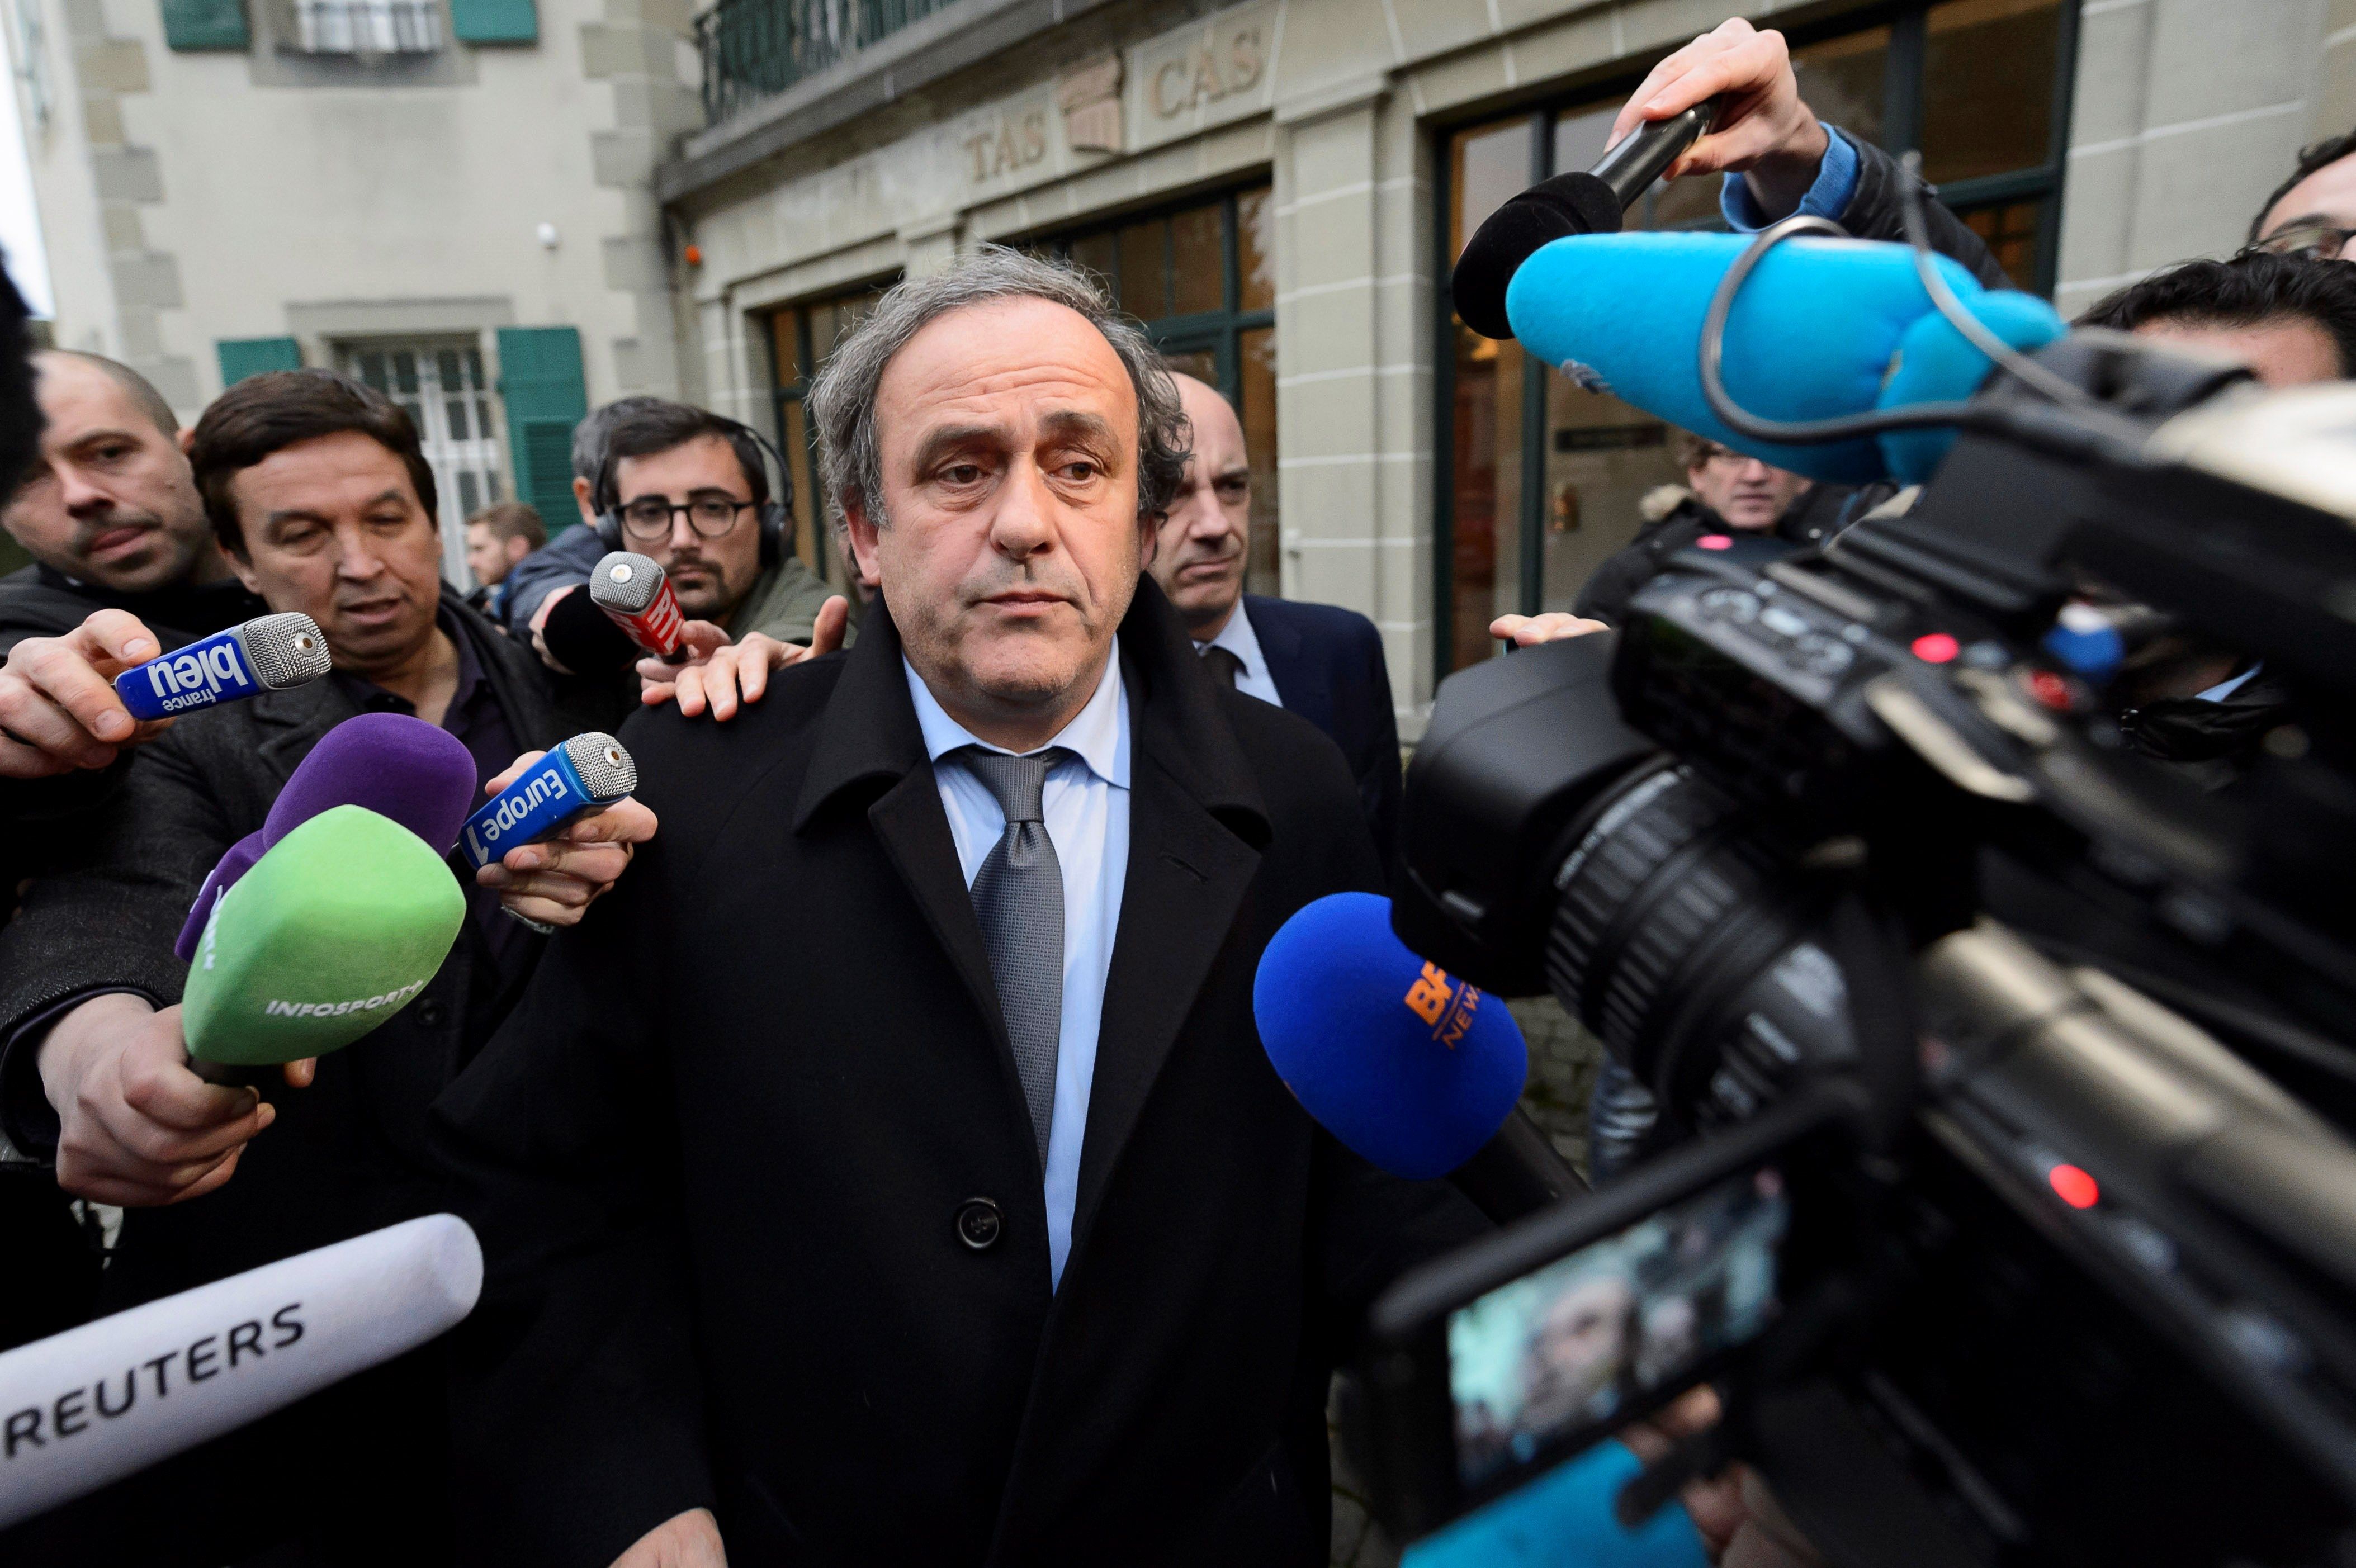 El expresidente de la Uefa Michel Platini atraviesa un mal momento en su carrera y vida personal. (Foto Prensa Libre: EFE)